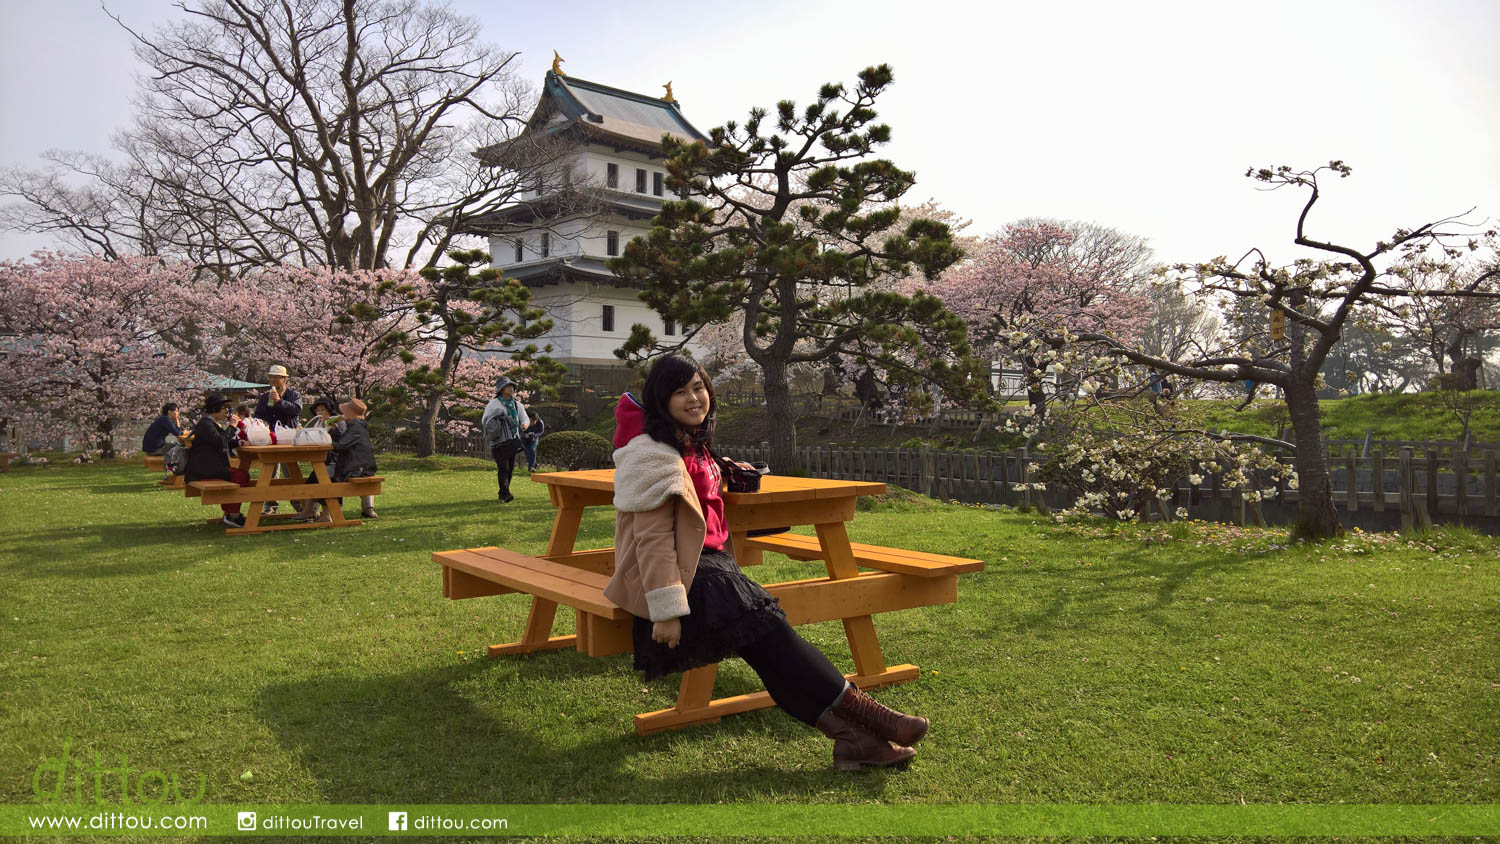 北海道最南端 松前城 城堡 海濱 神社伴襯萬棵櫻樹的魅力 Dittou